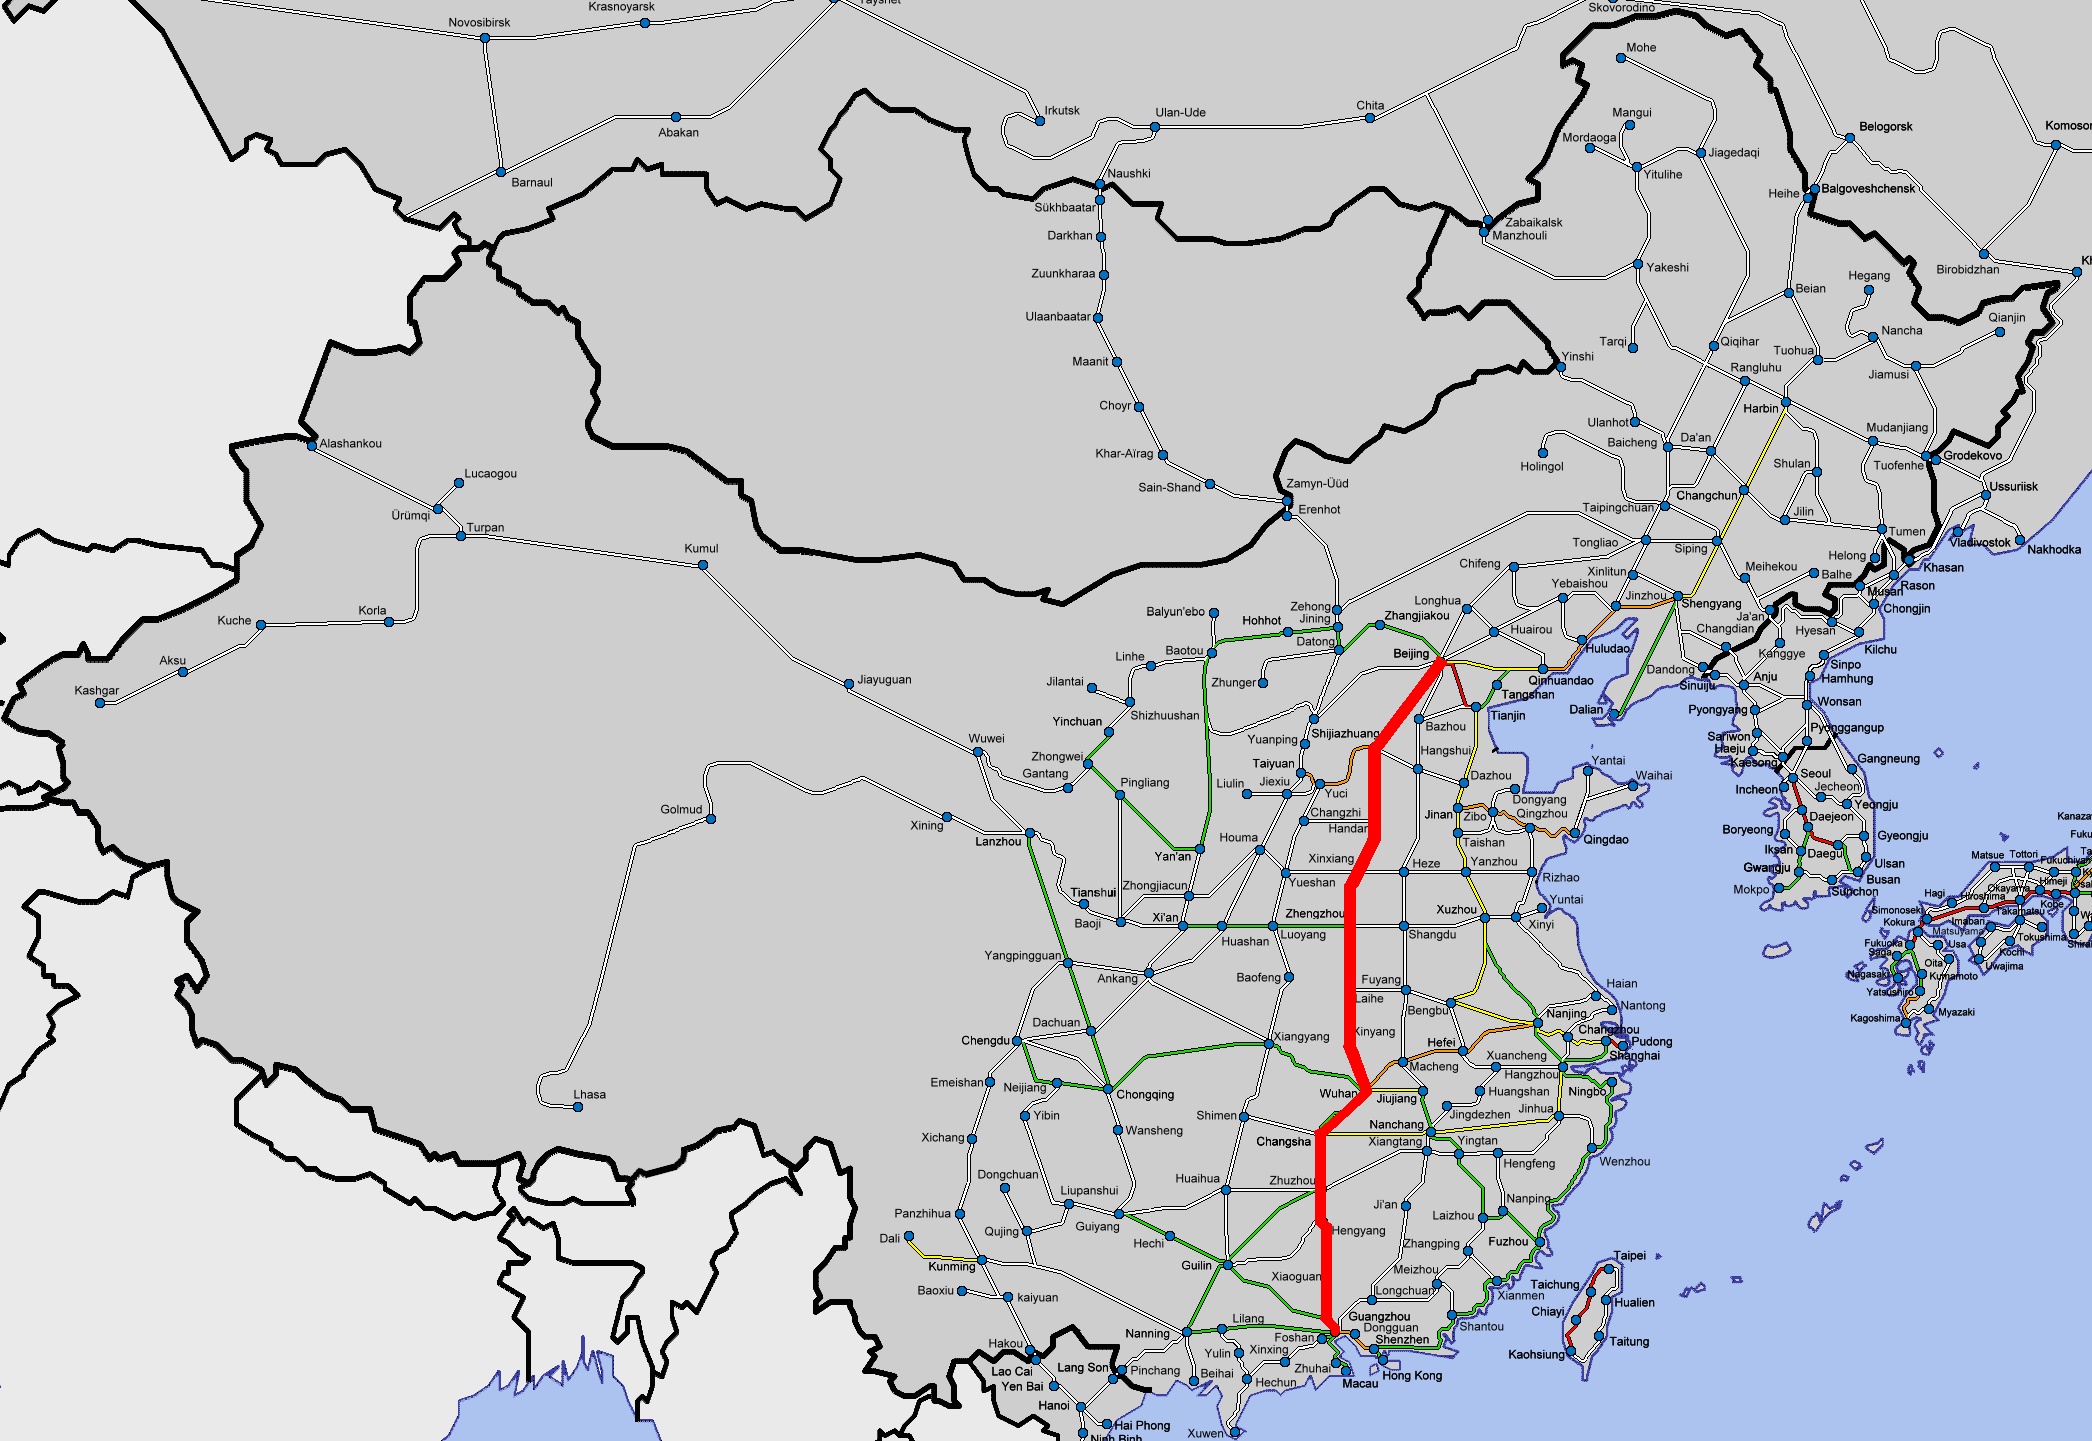 file peking guangzhou high speed line png wikimedia commons https commons wikimedia org wiki file peking guangzhou high speed line png